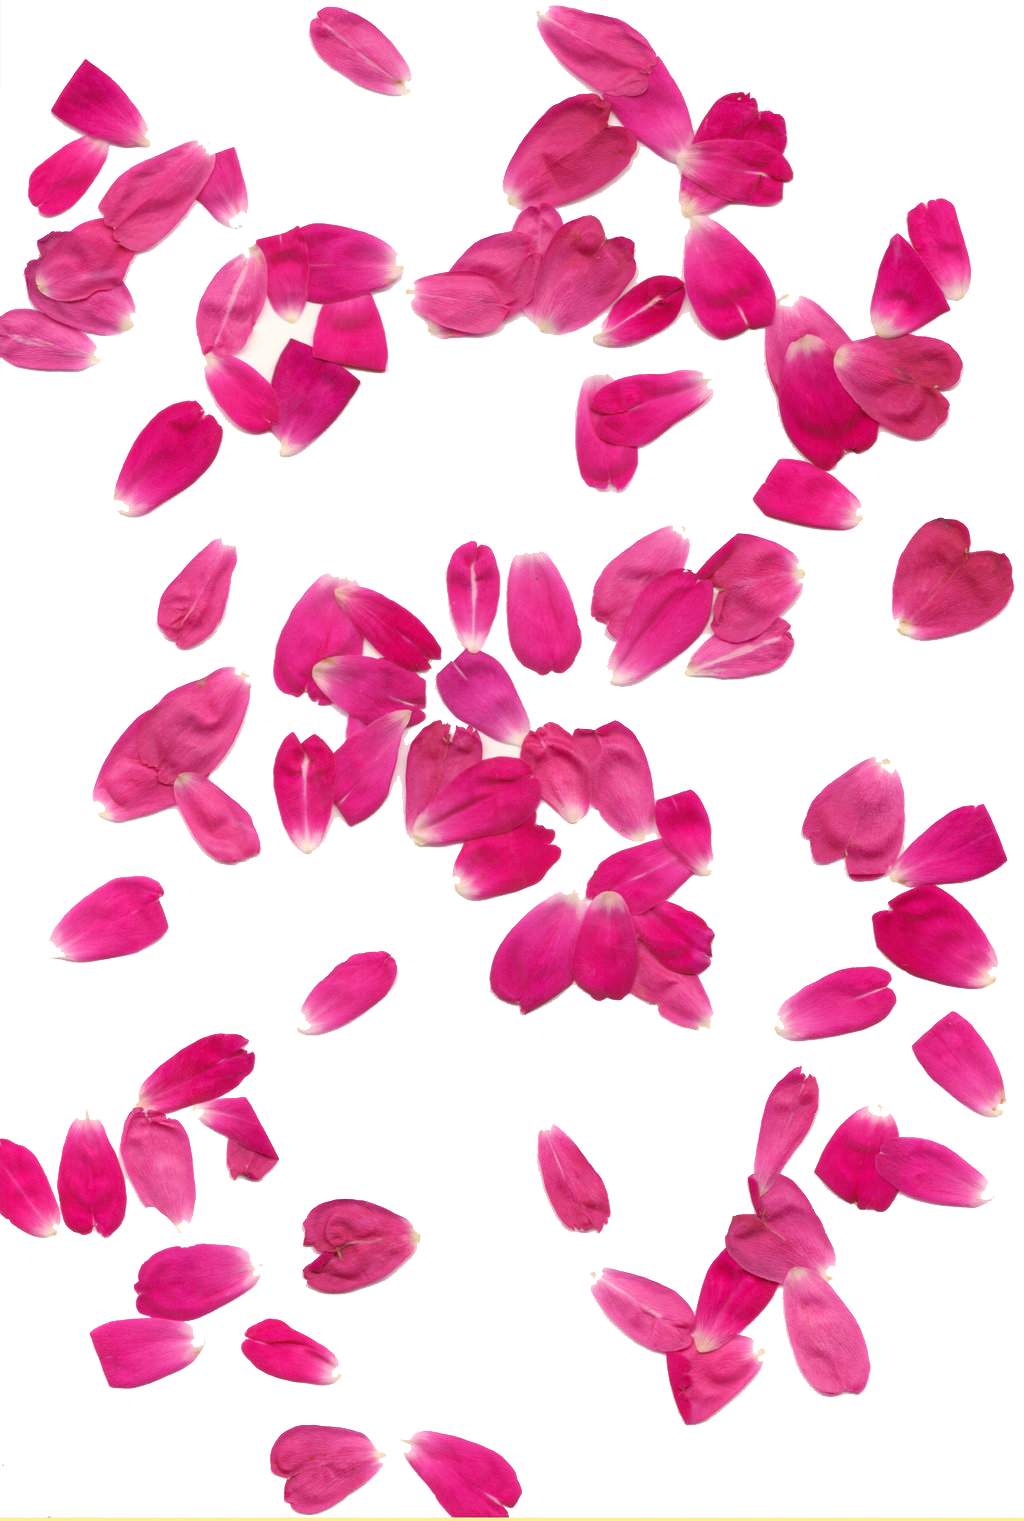 Rose Petals Transparent Background PNG, SVG Clip art for Web - Download